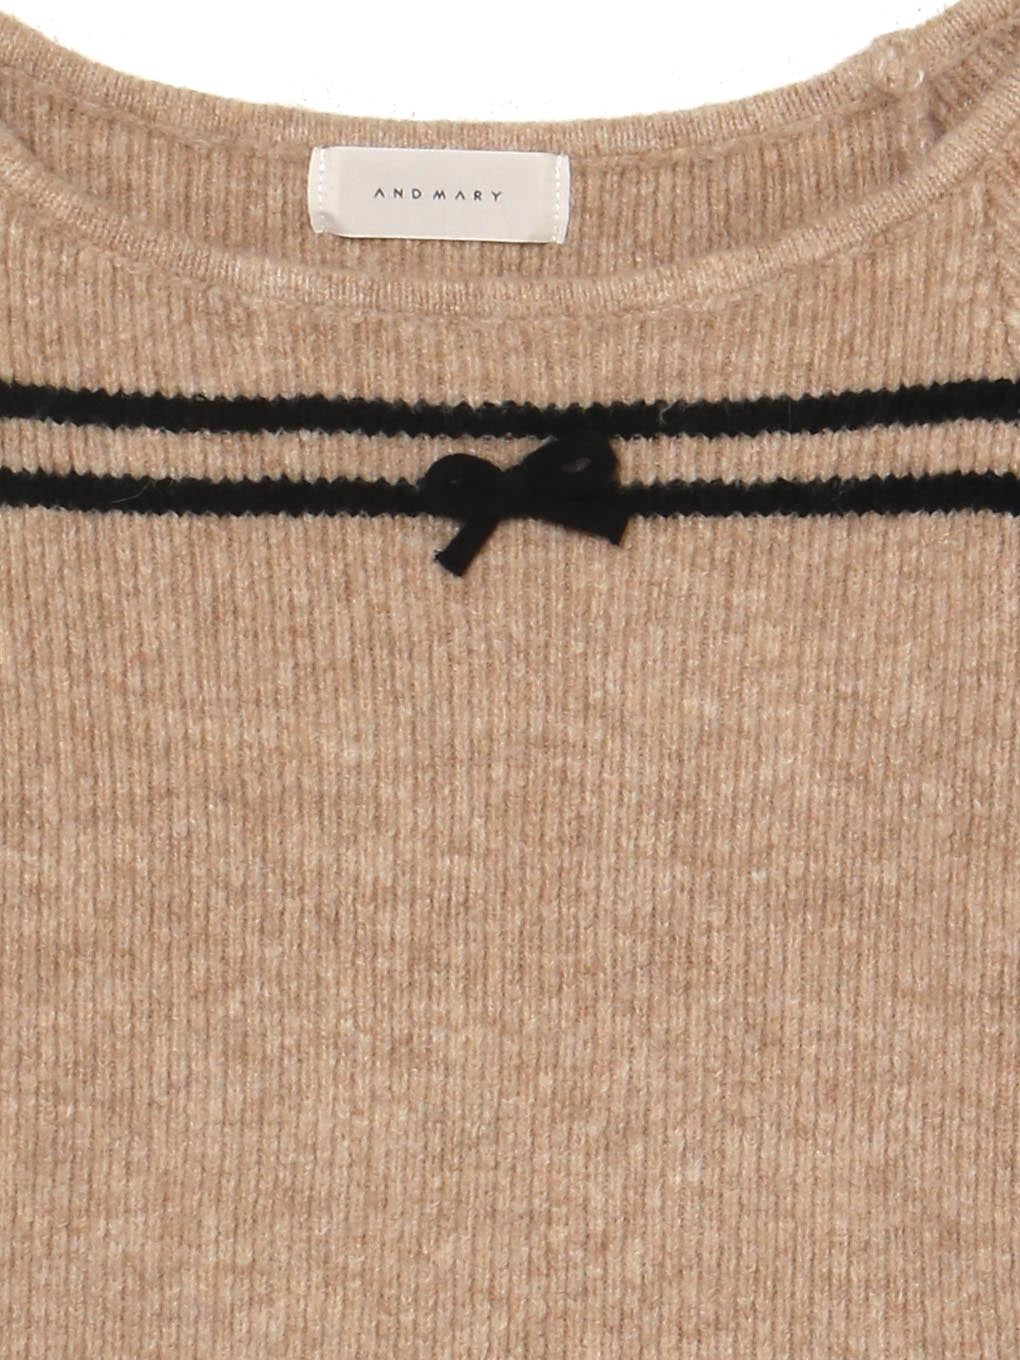 Blair ribbon knit tops